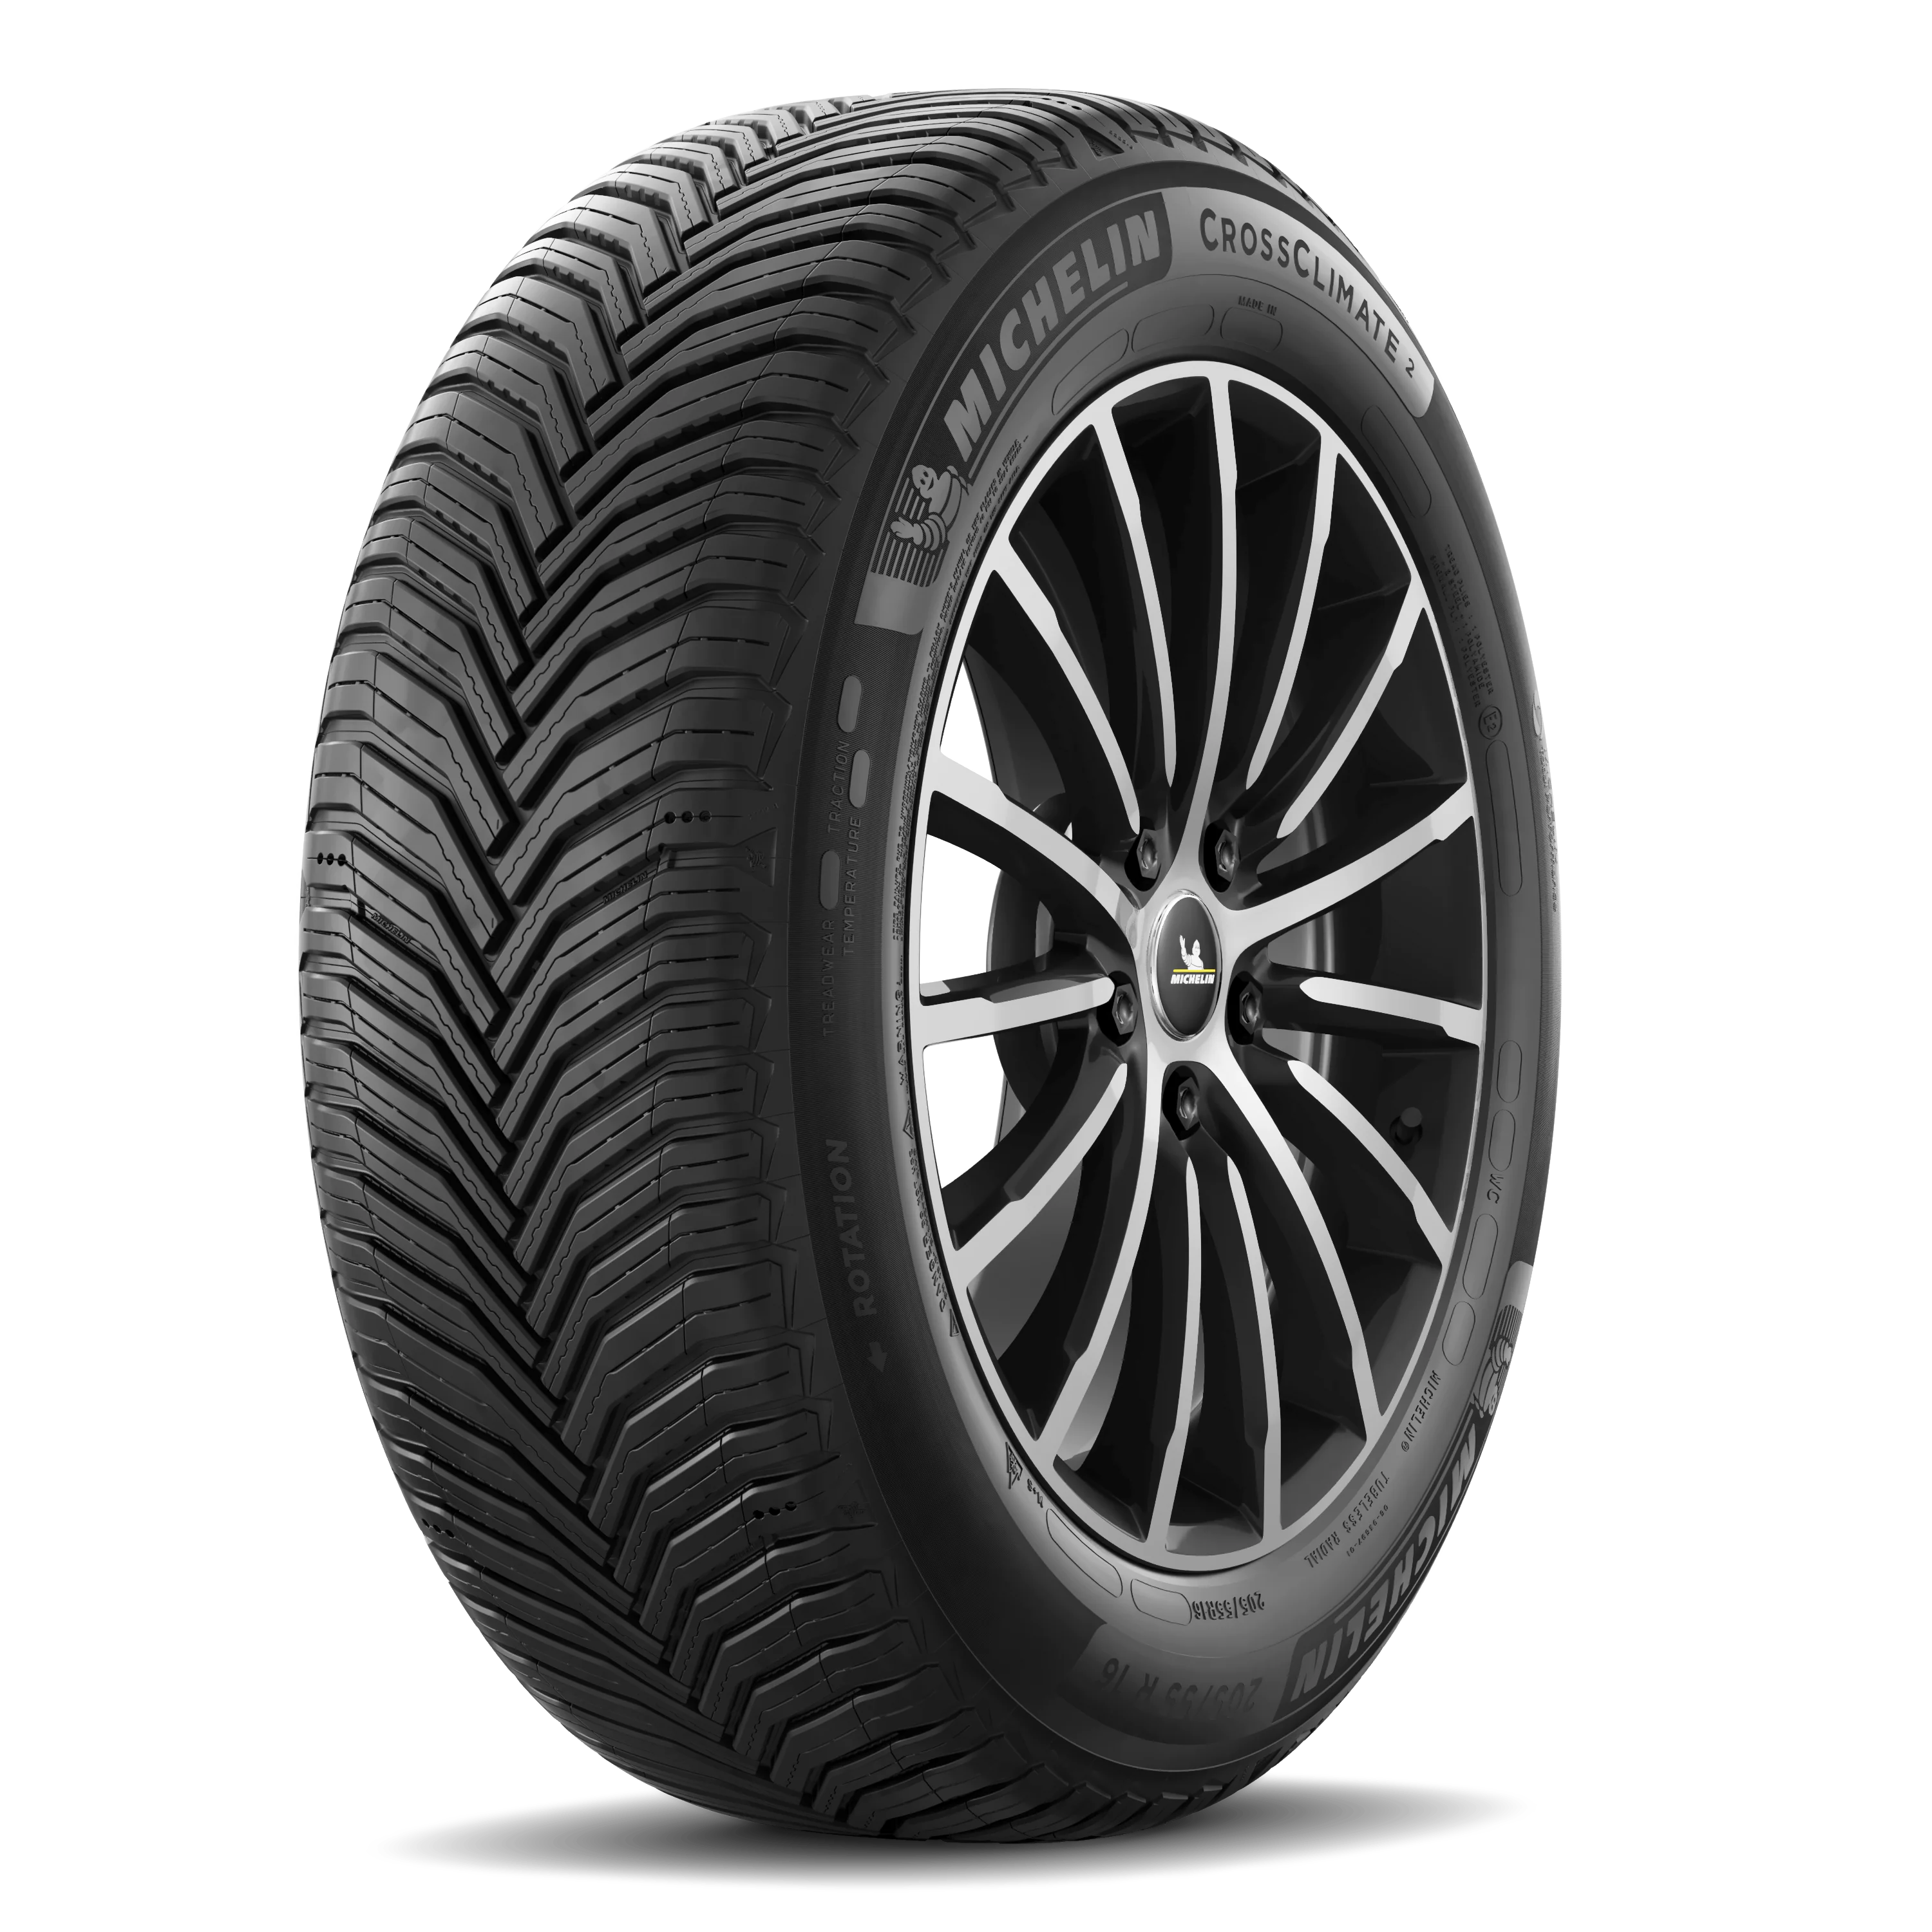 Michelin Michelin 225/65 R17 106V CROSS CLIMATE-2 XL pneumatici nuovi All Season 